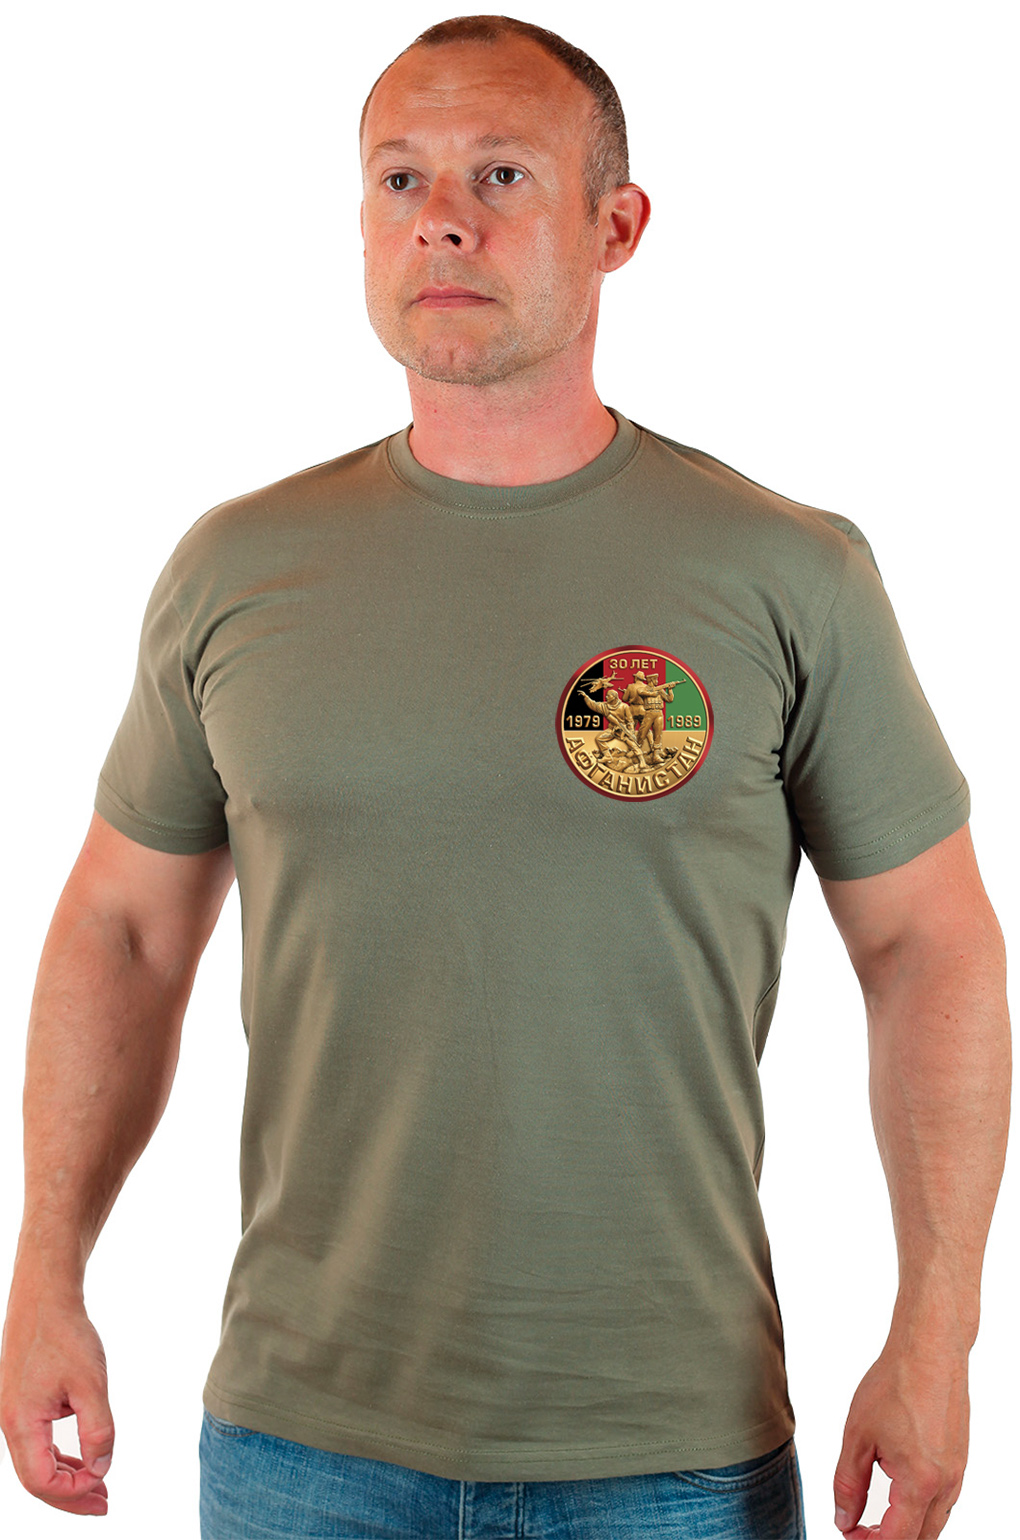 Подарок афганцу! Милитари футболка ко Дню вывода войск из Афганистана. 